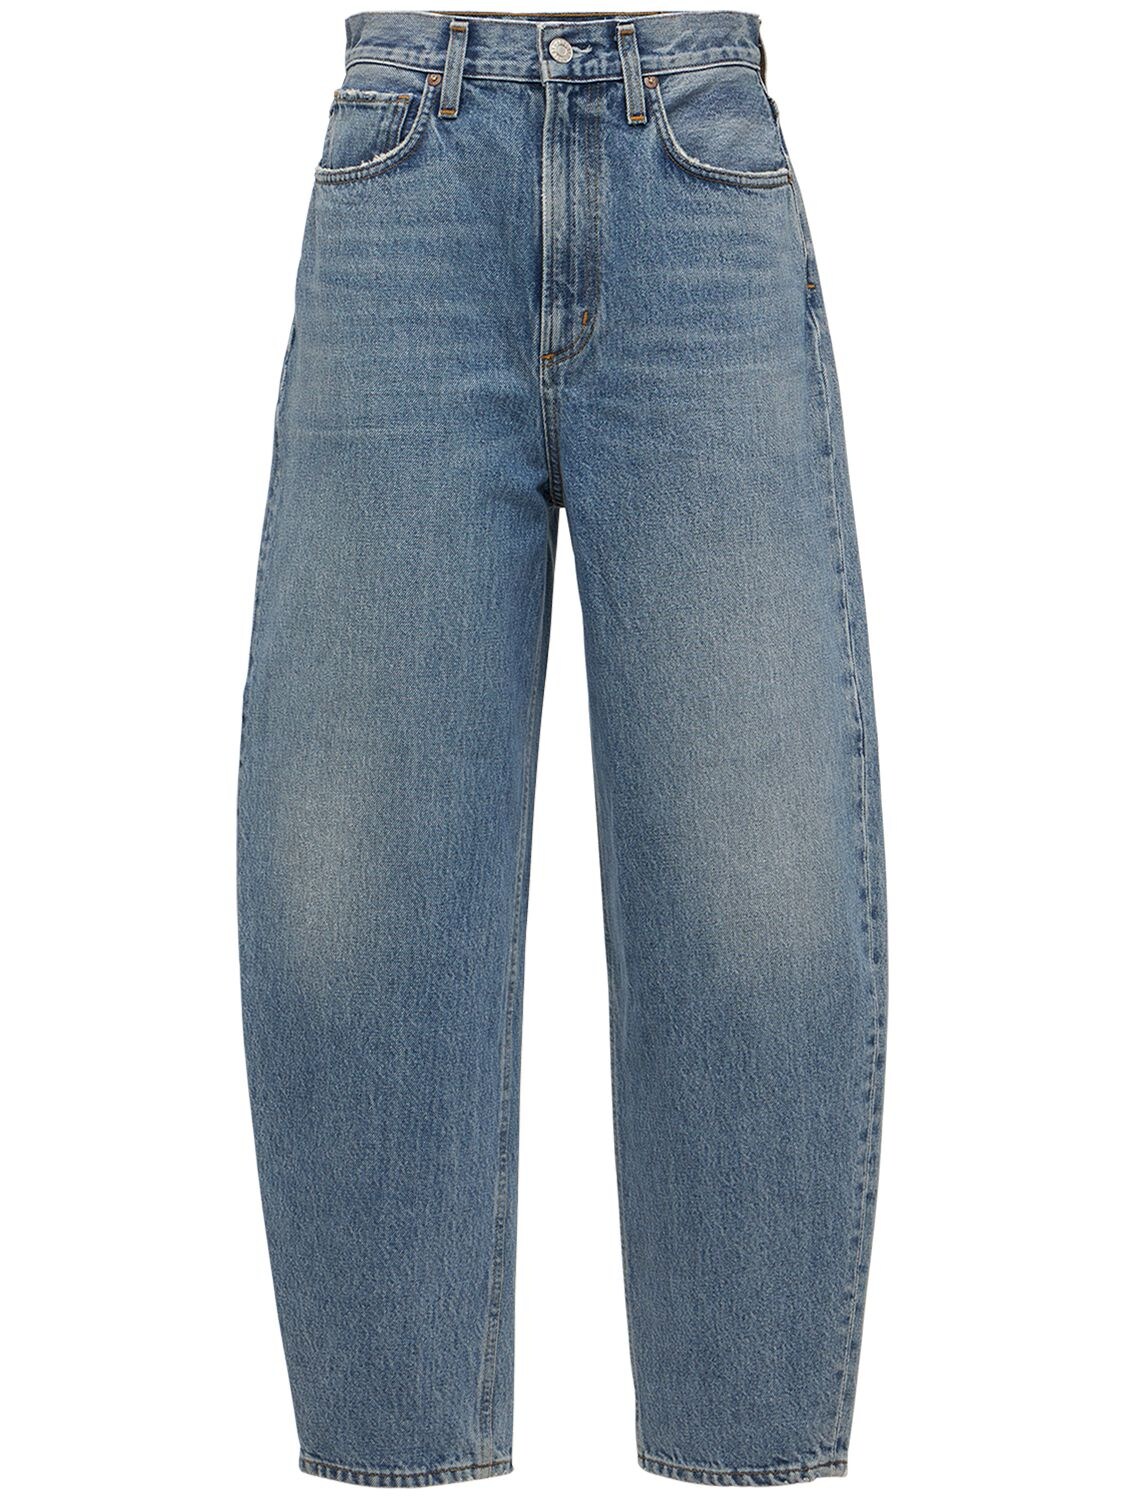 Mujer Jeans Abombados De Algodón Con Cintura Alta 28 - AGOLDE - Modalova